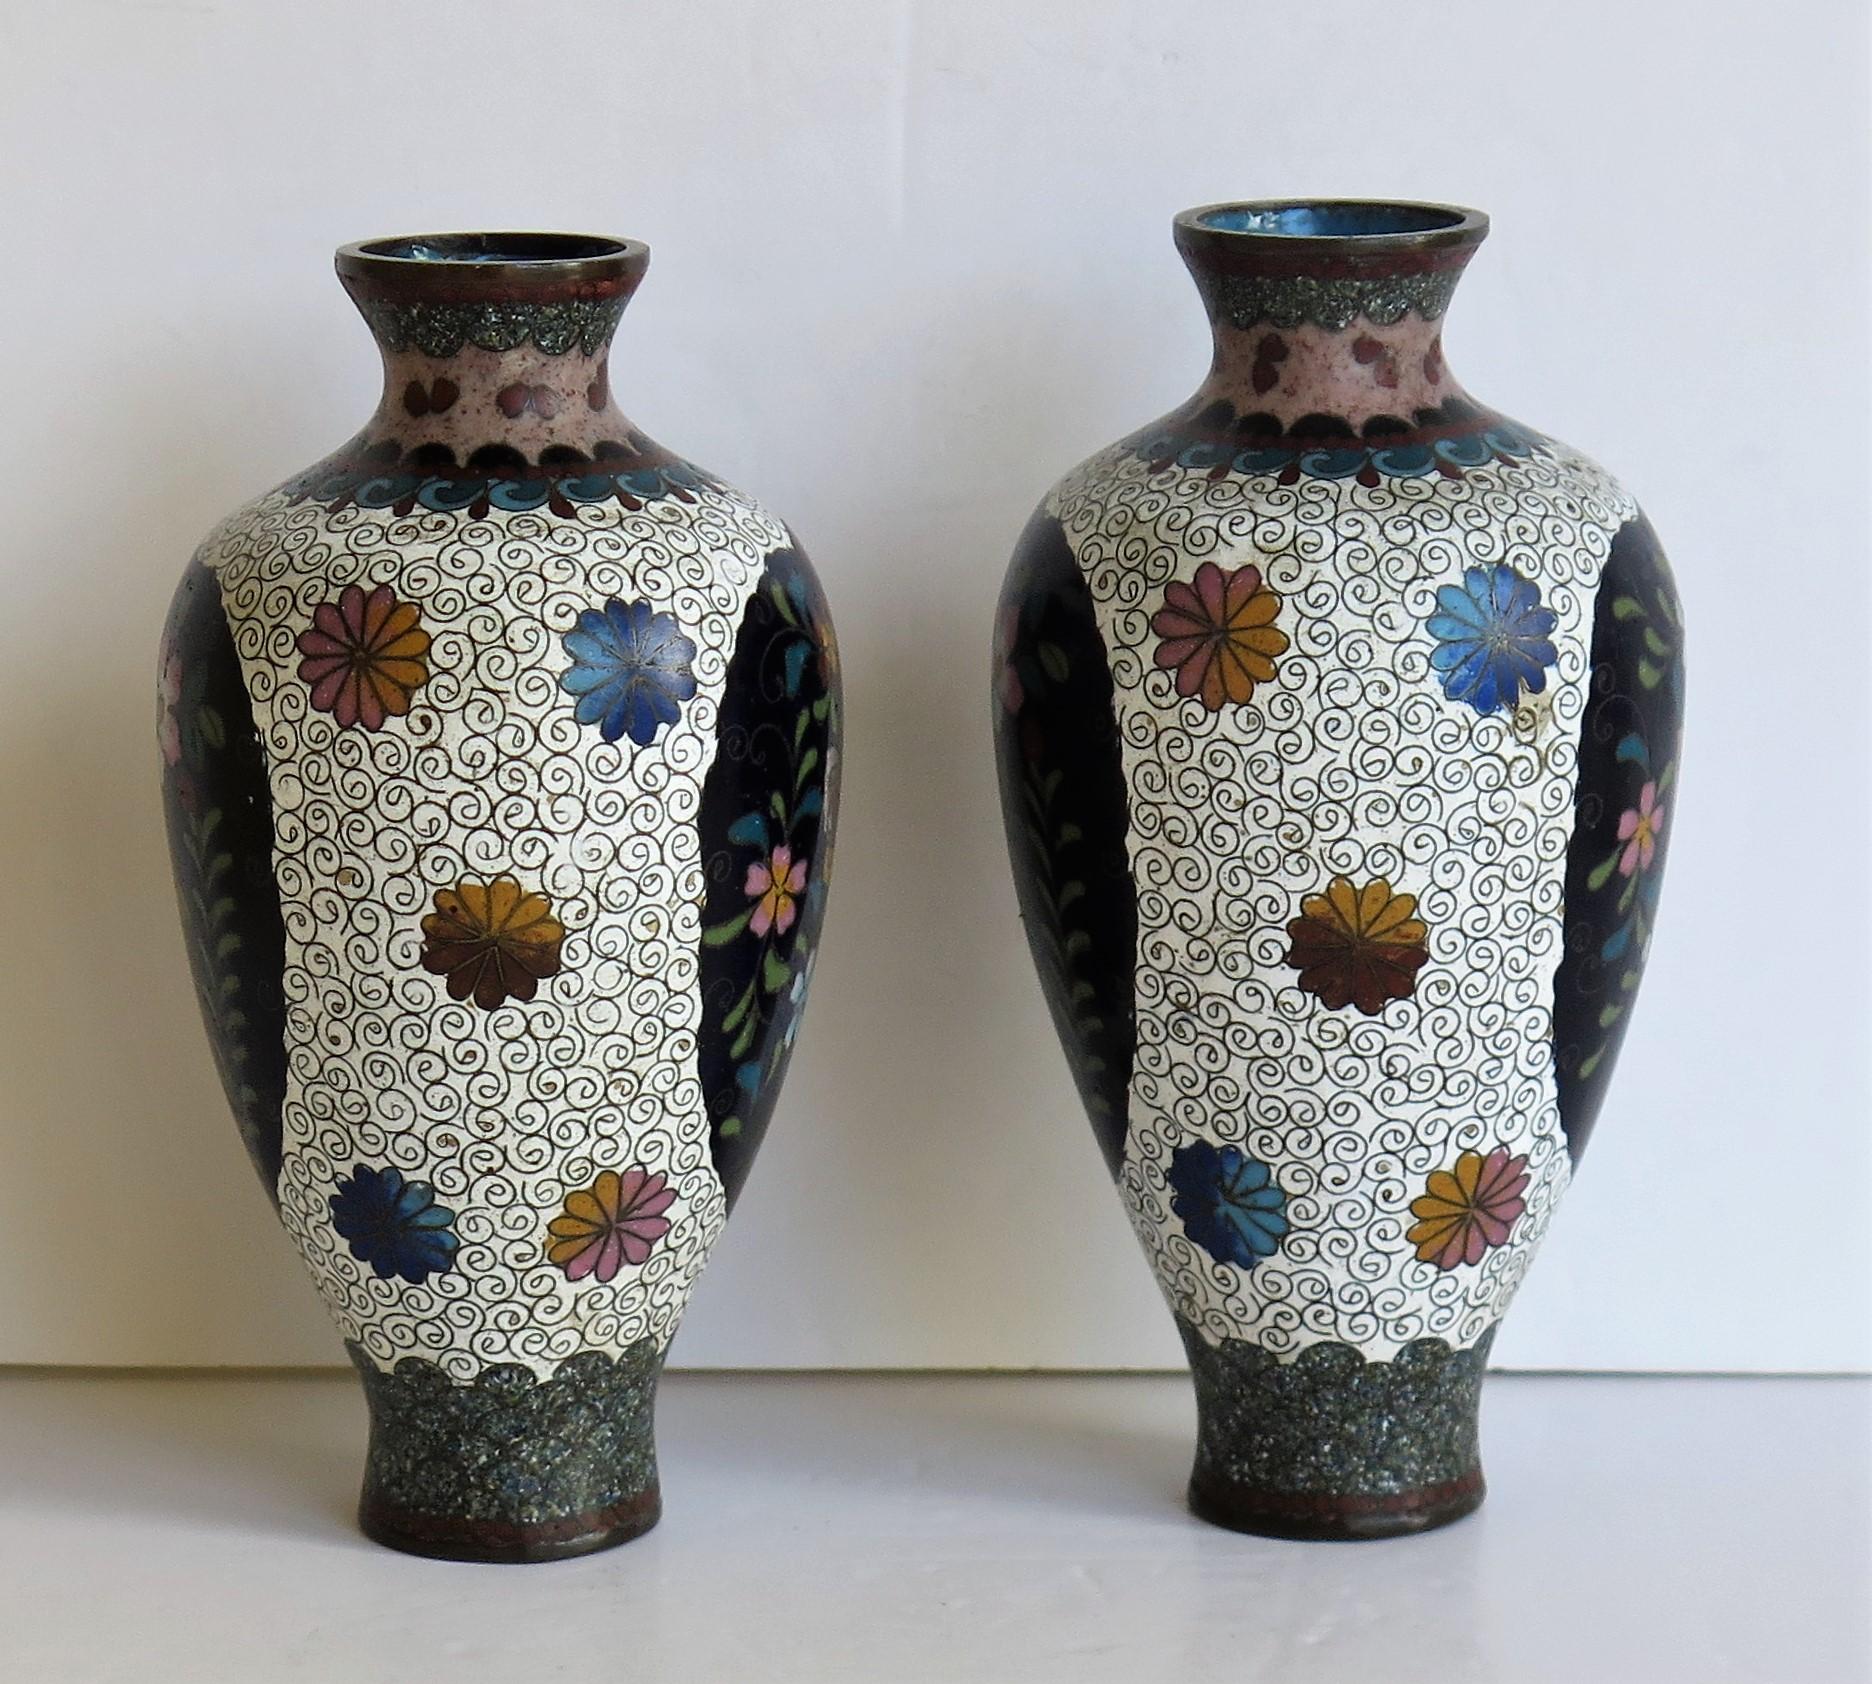 Japanese Cloisonné Vases Butterflies & Flowers, 19th Century Meiji Period, Pair For Sale 1